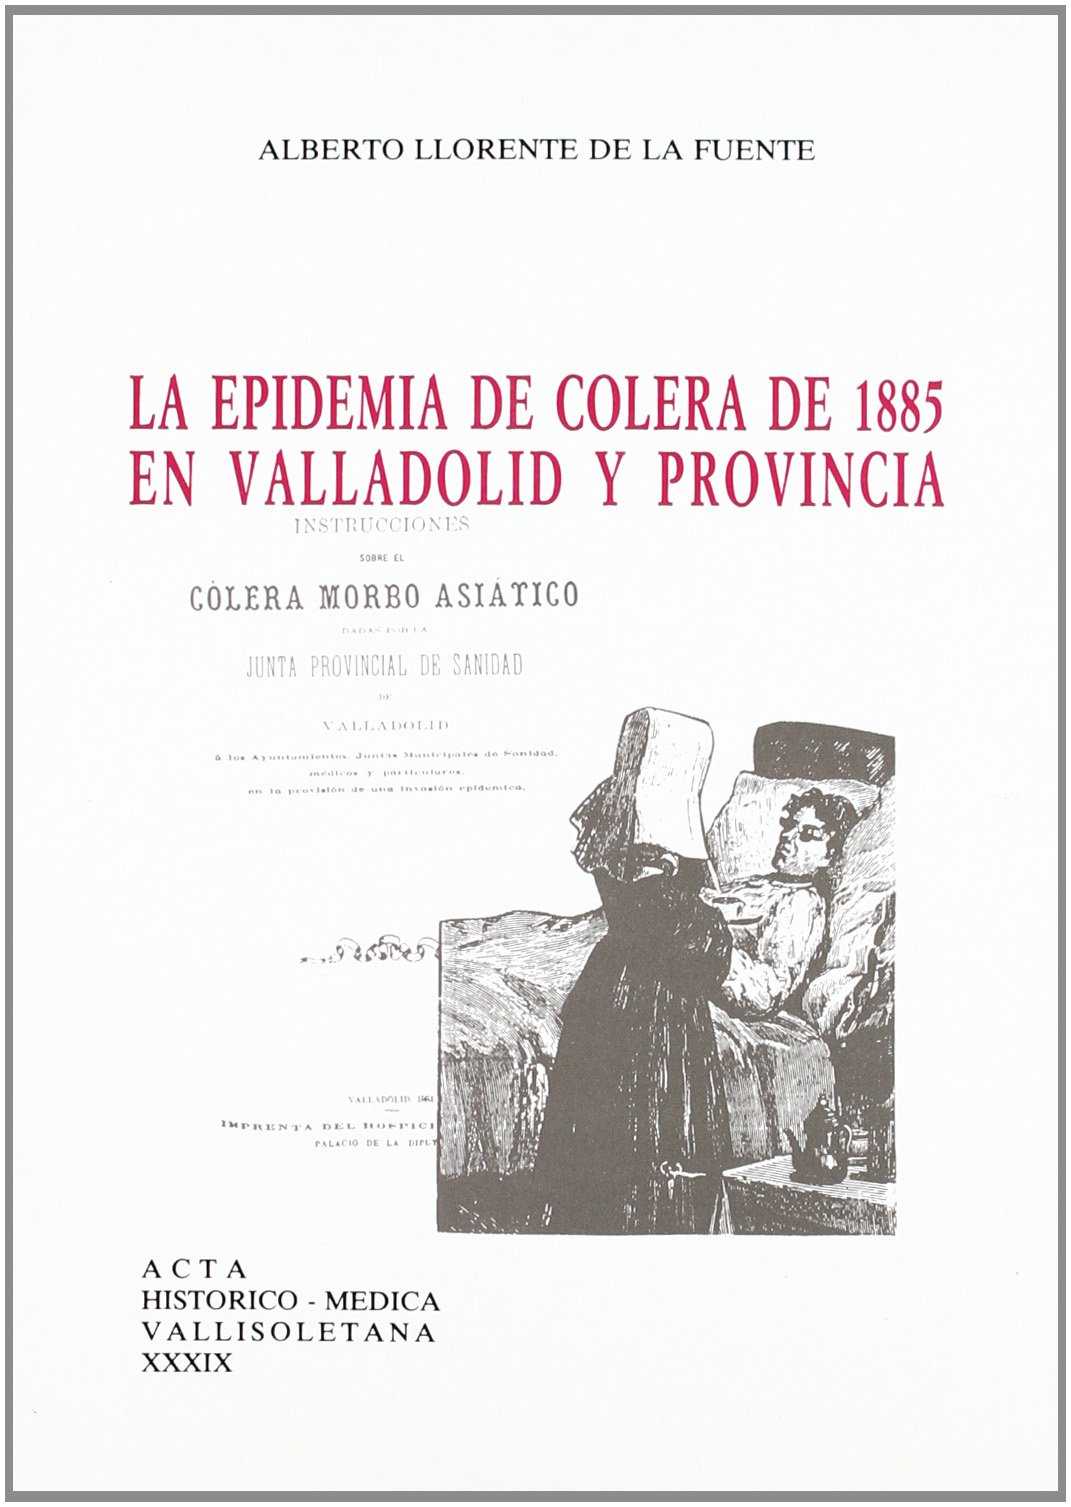 La epidemia de cólera de 1885 en Valladolid y provincia